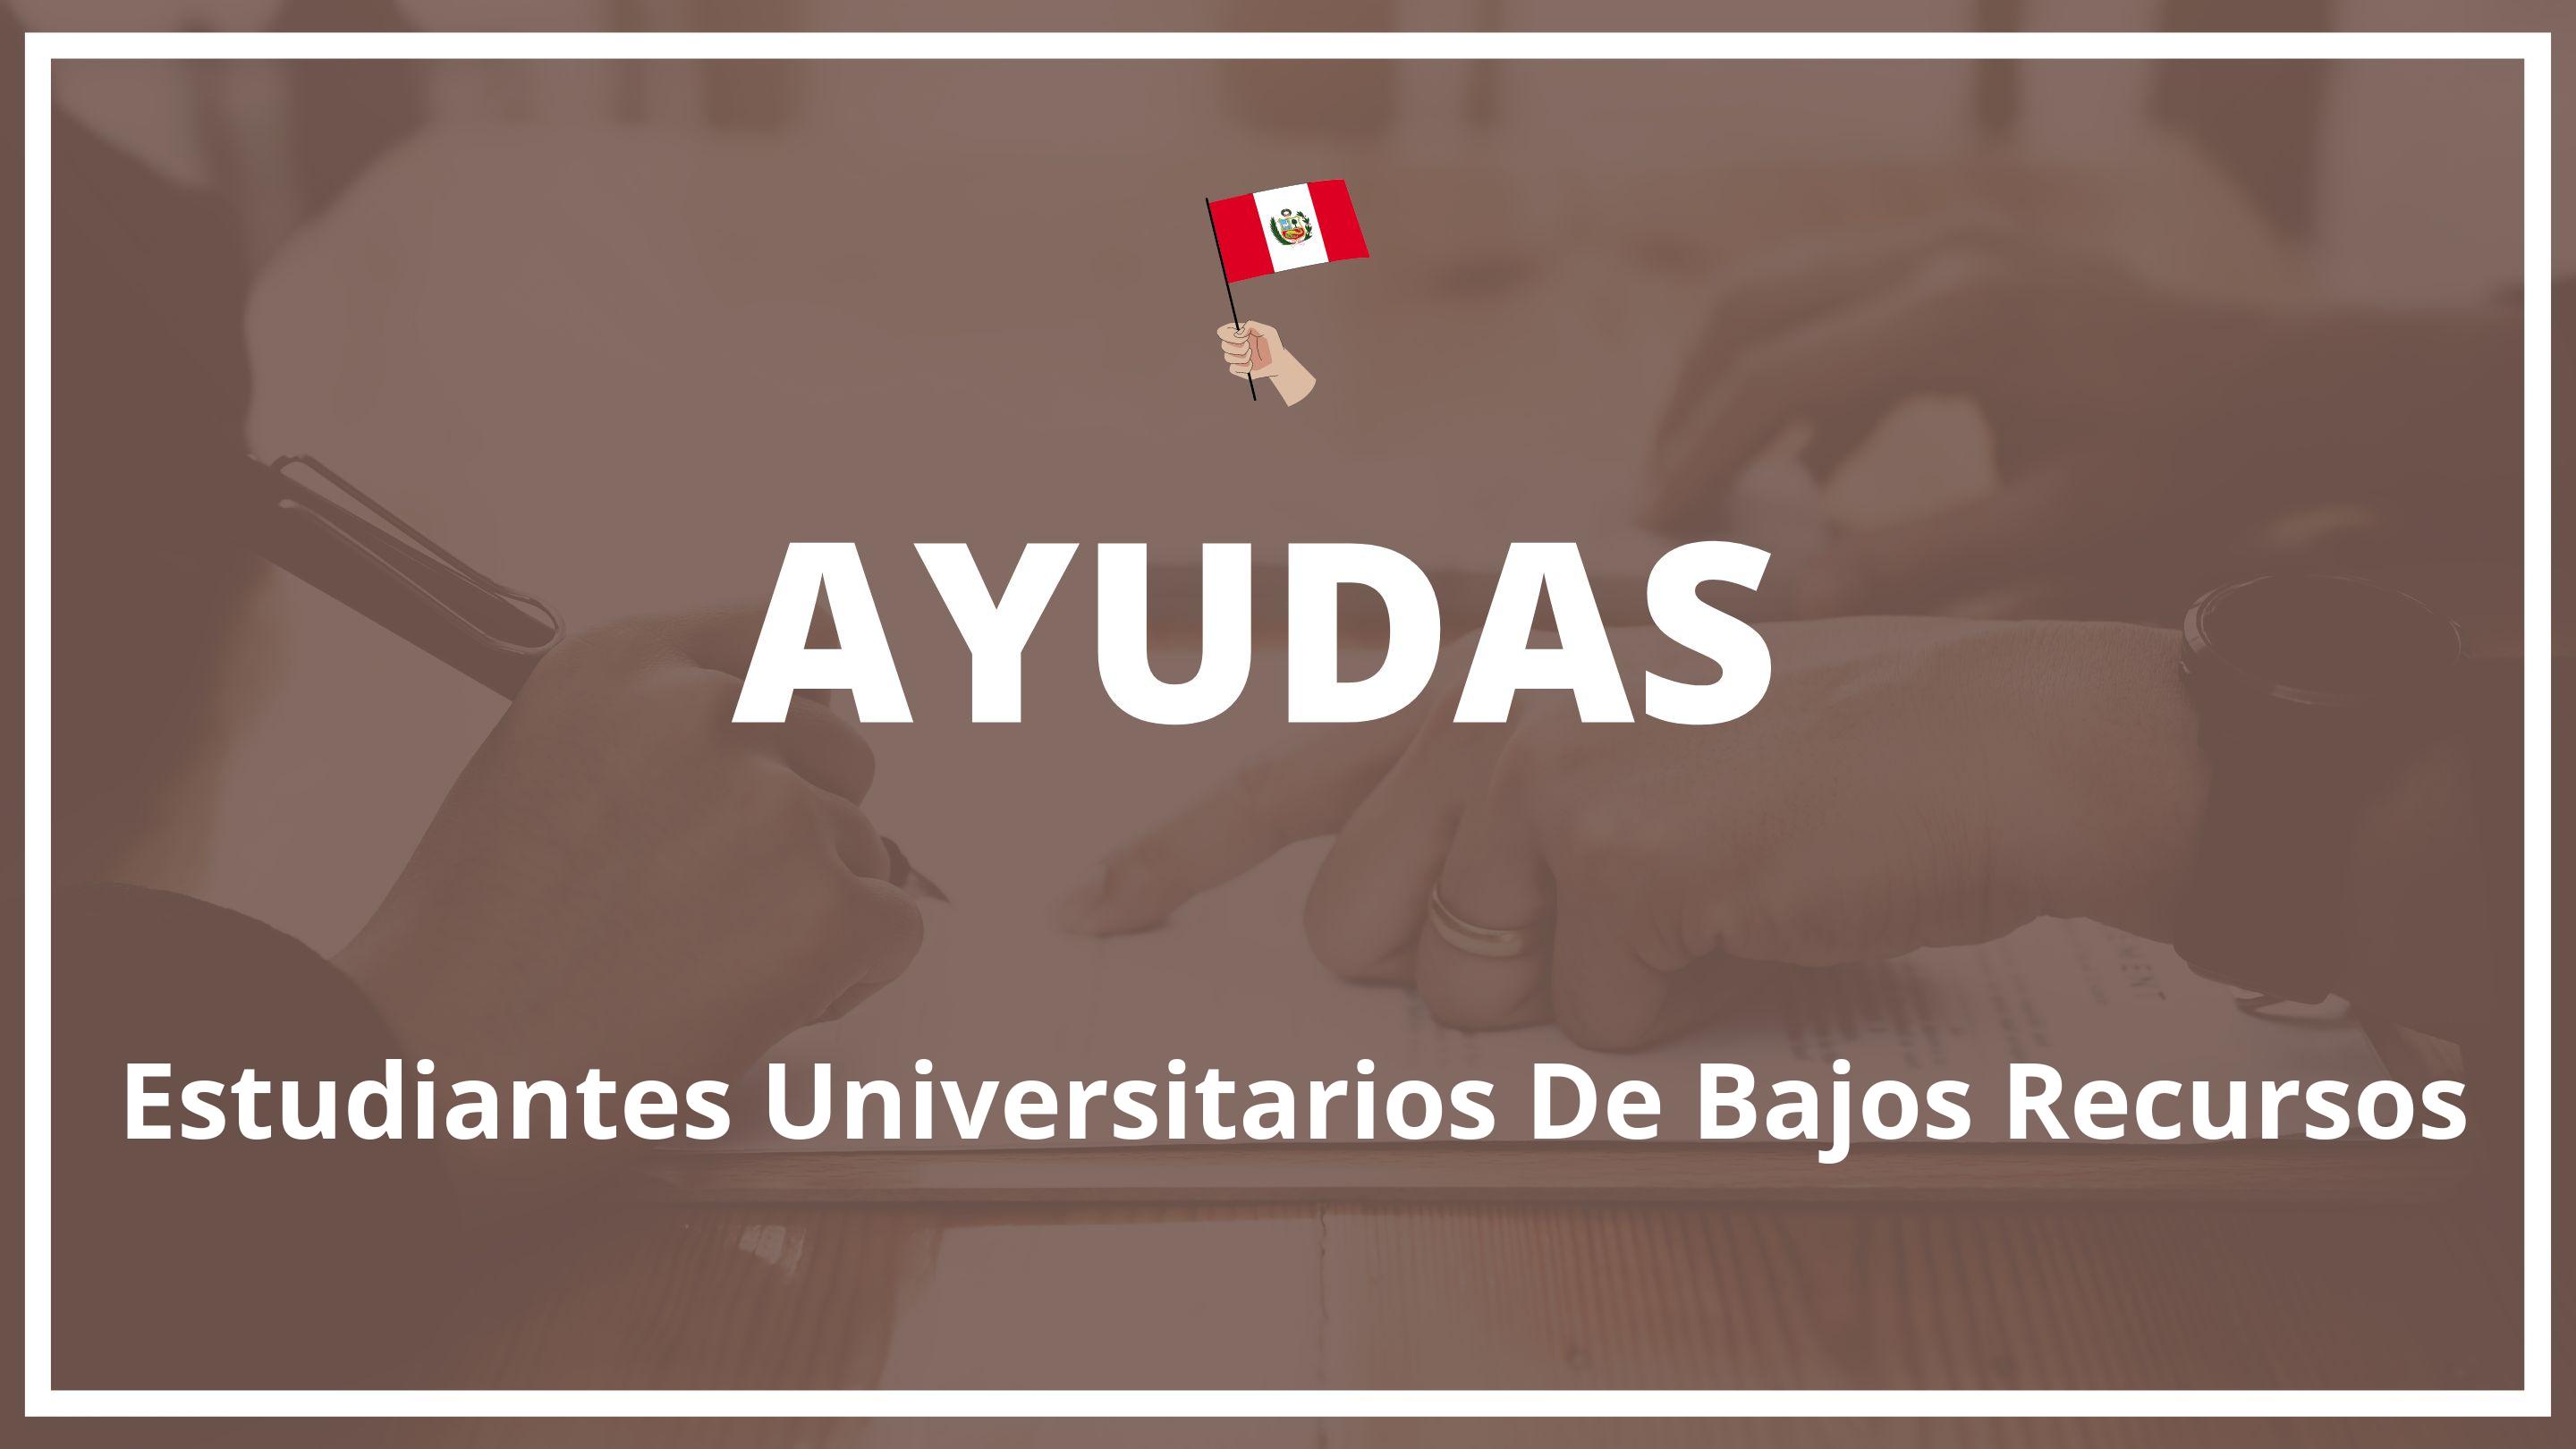 Ayudas para estudiantes universitarios de bajos recursos Peru